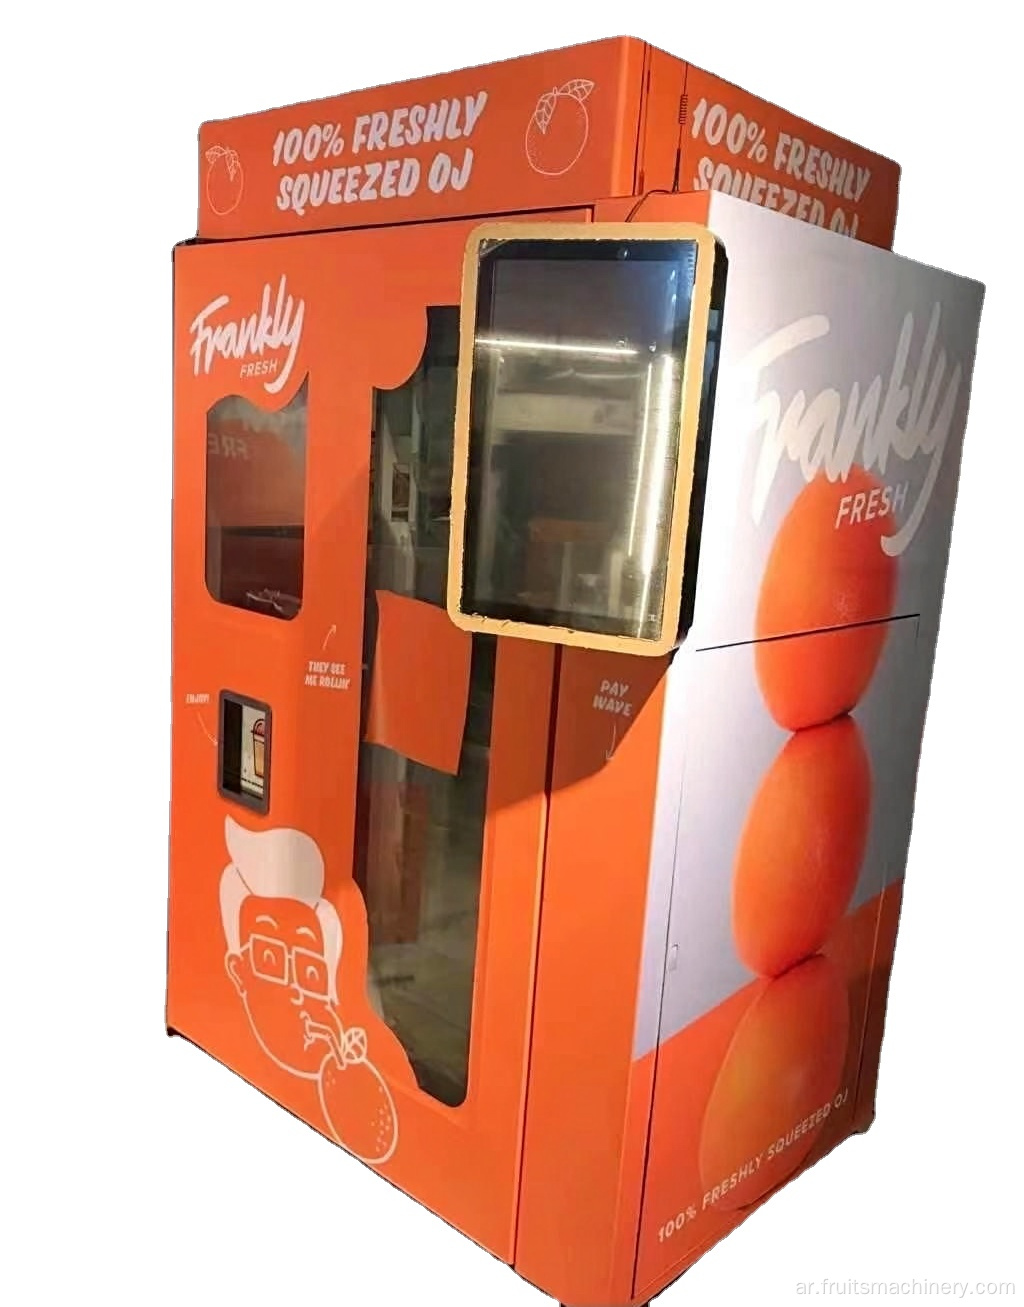 آلة بيع عصير البرتقال